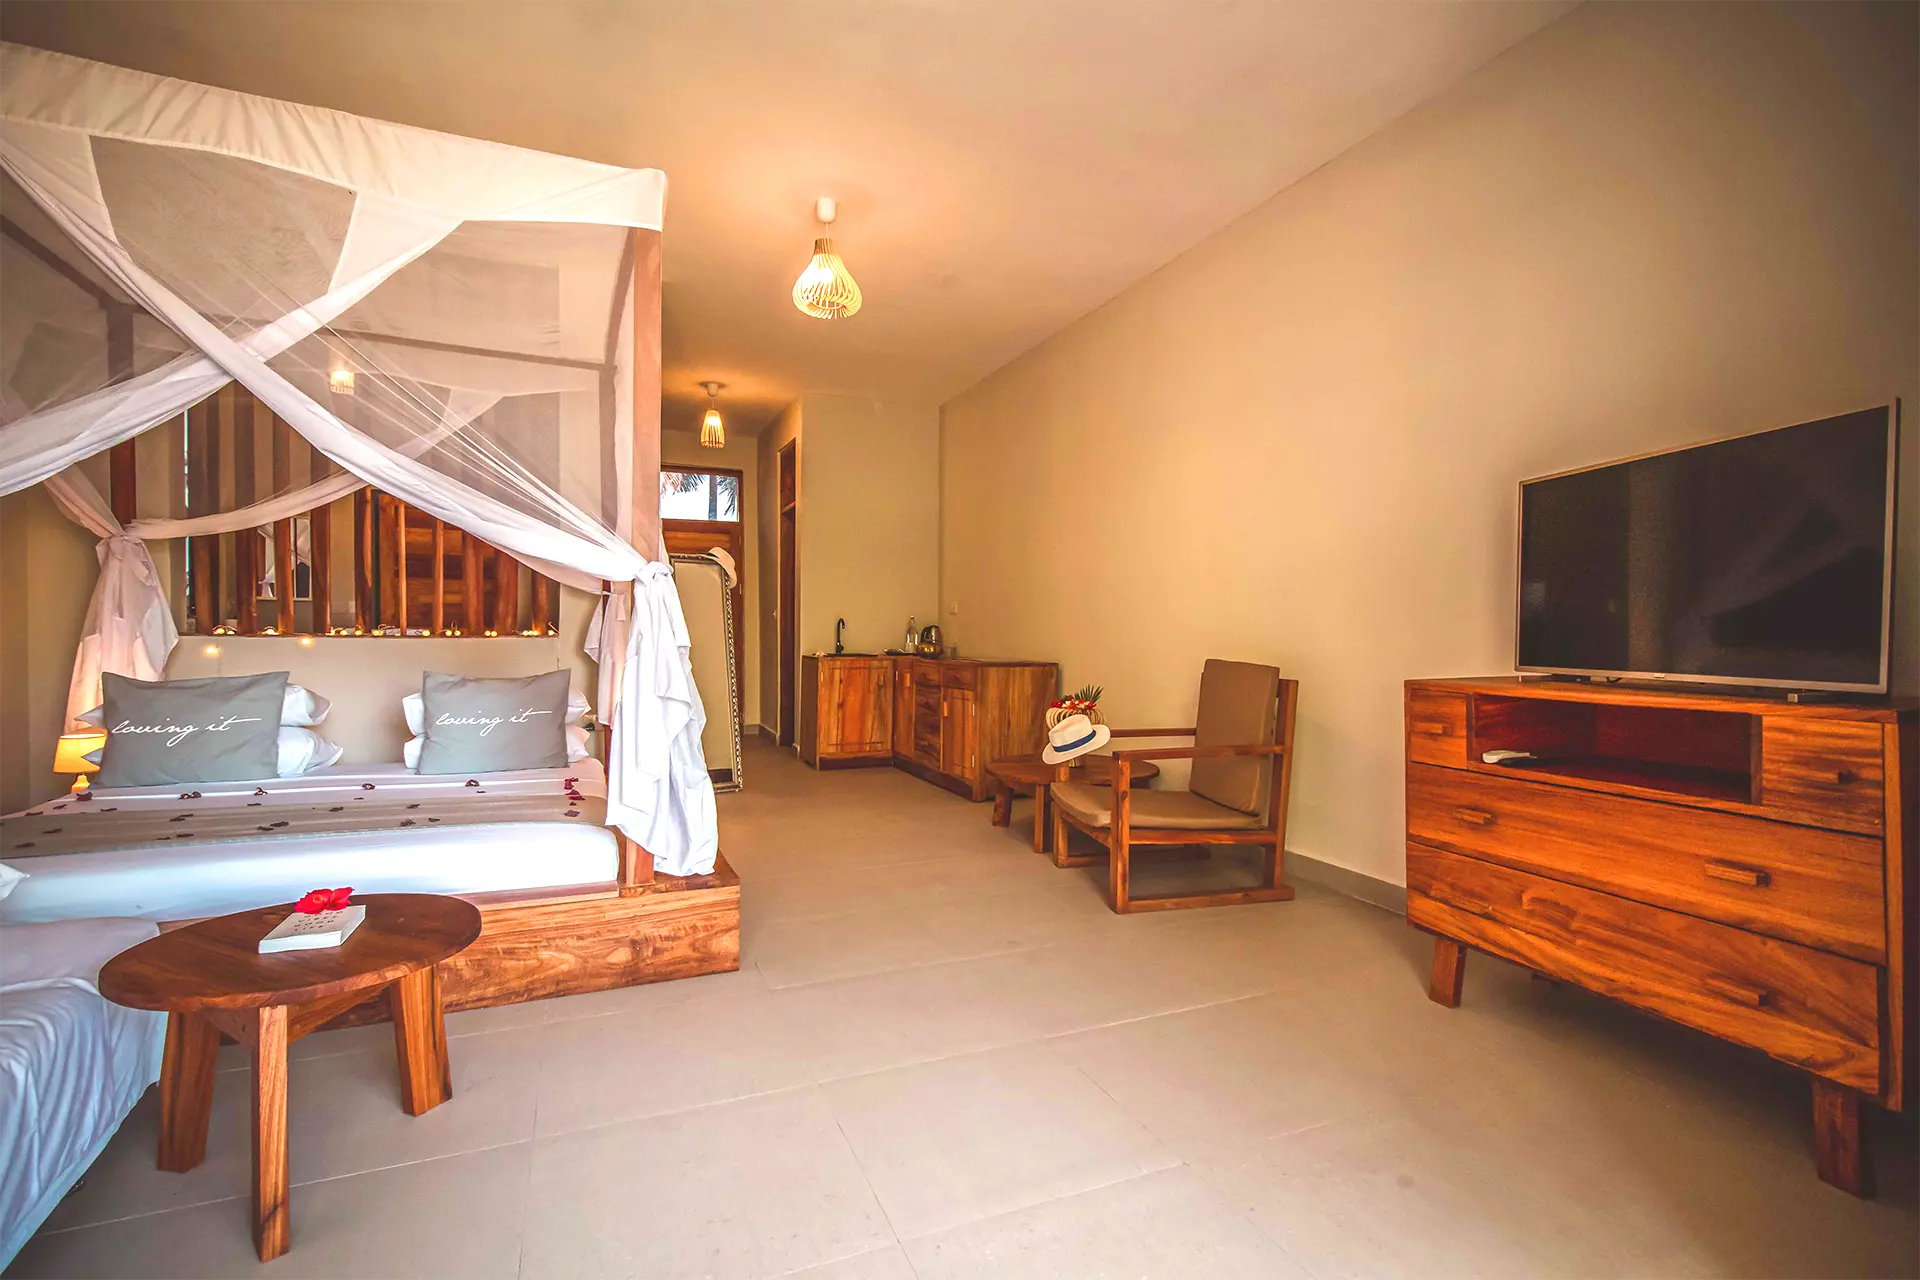 Luksusowy pokój hotelowy na Zanzibarze z dużym łóżkiem z baldachimem, aneksem kuchennym, drewnianymi meblami i telewizorem.